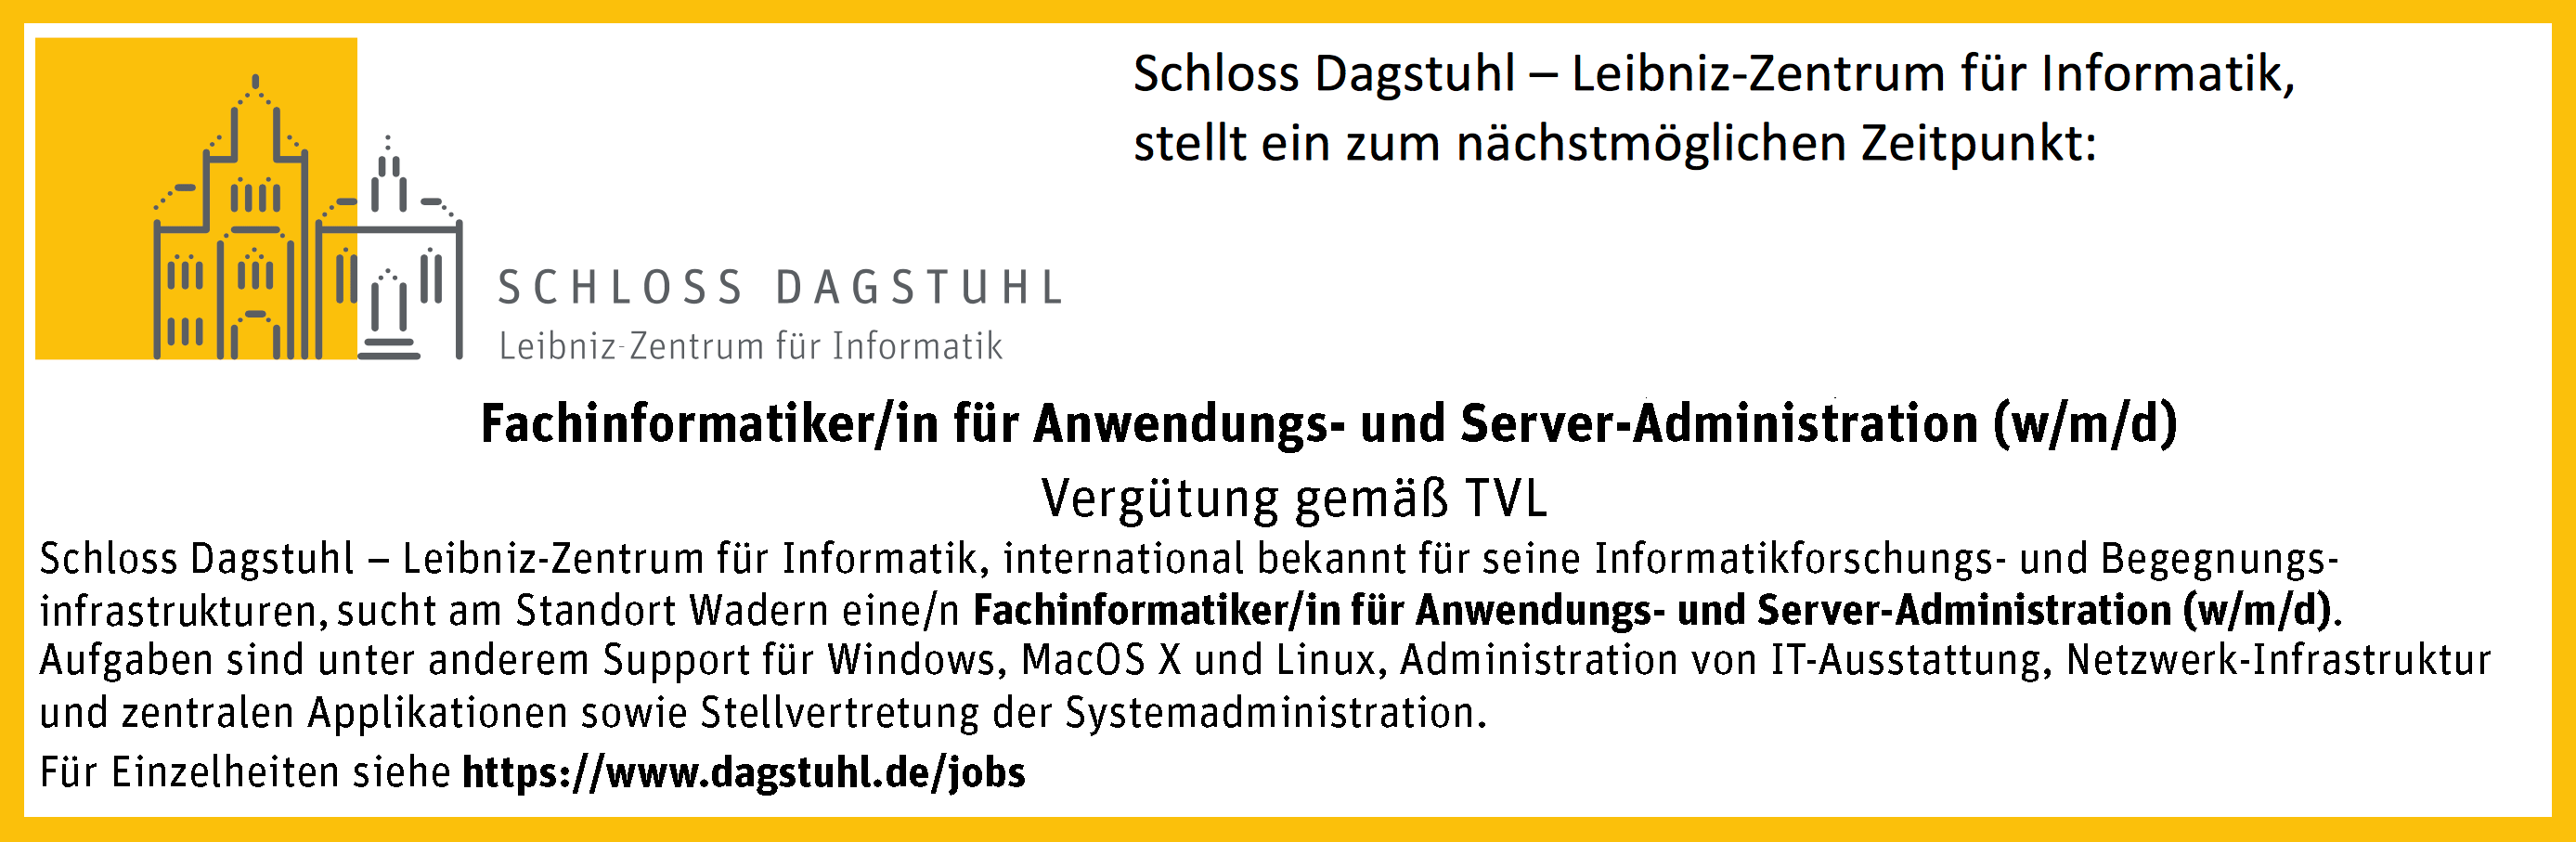 Article Image: Schloss Dagstuhl sucht eine/n Fachinformatiker/in für Anwendungs- und Server-Administration (w/m/d), Vergütung gemäß TVL